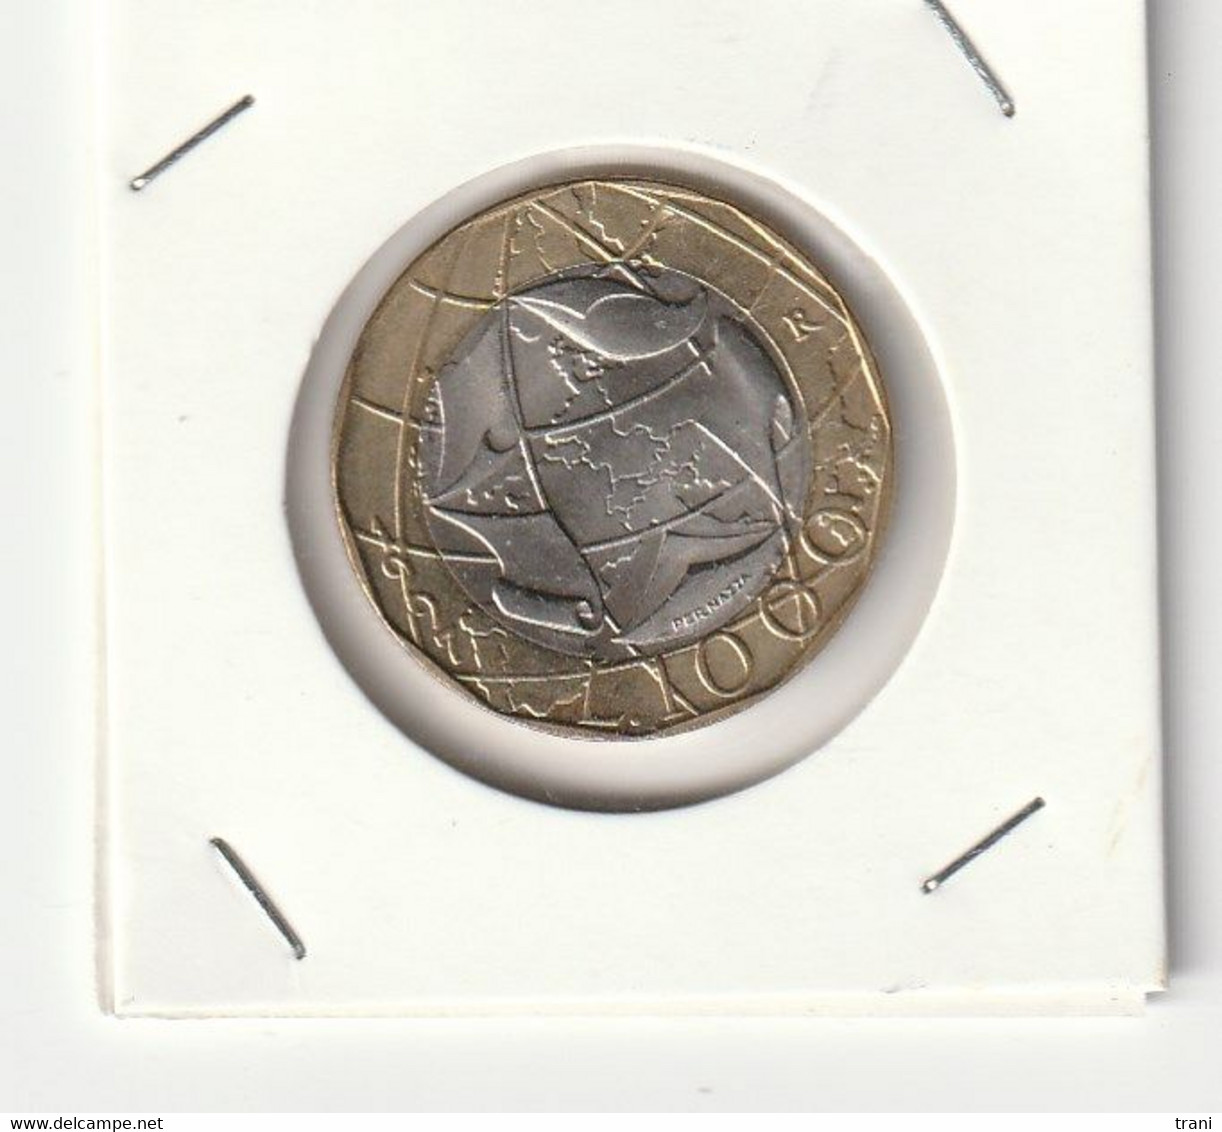 1997 - Moneta Da 1000 Lire Con Confini Sbagliati - Fior Di Conio - 1 000 Liras